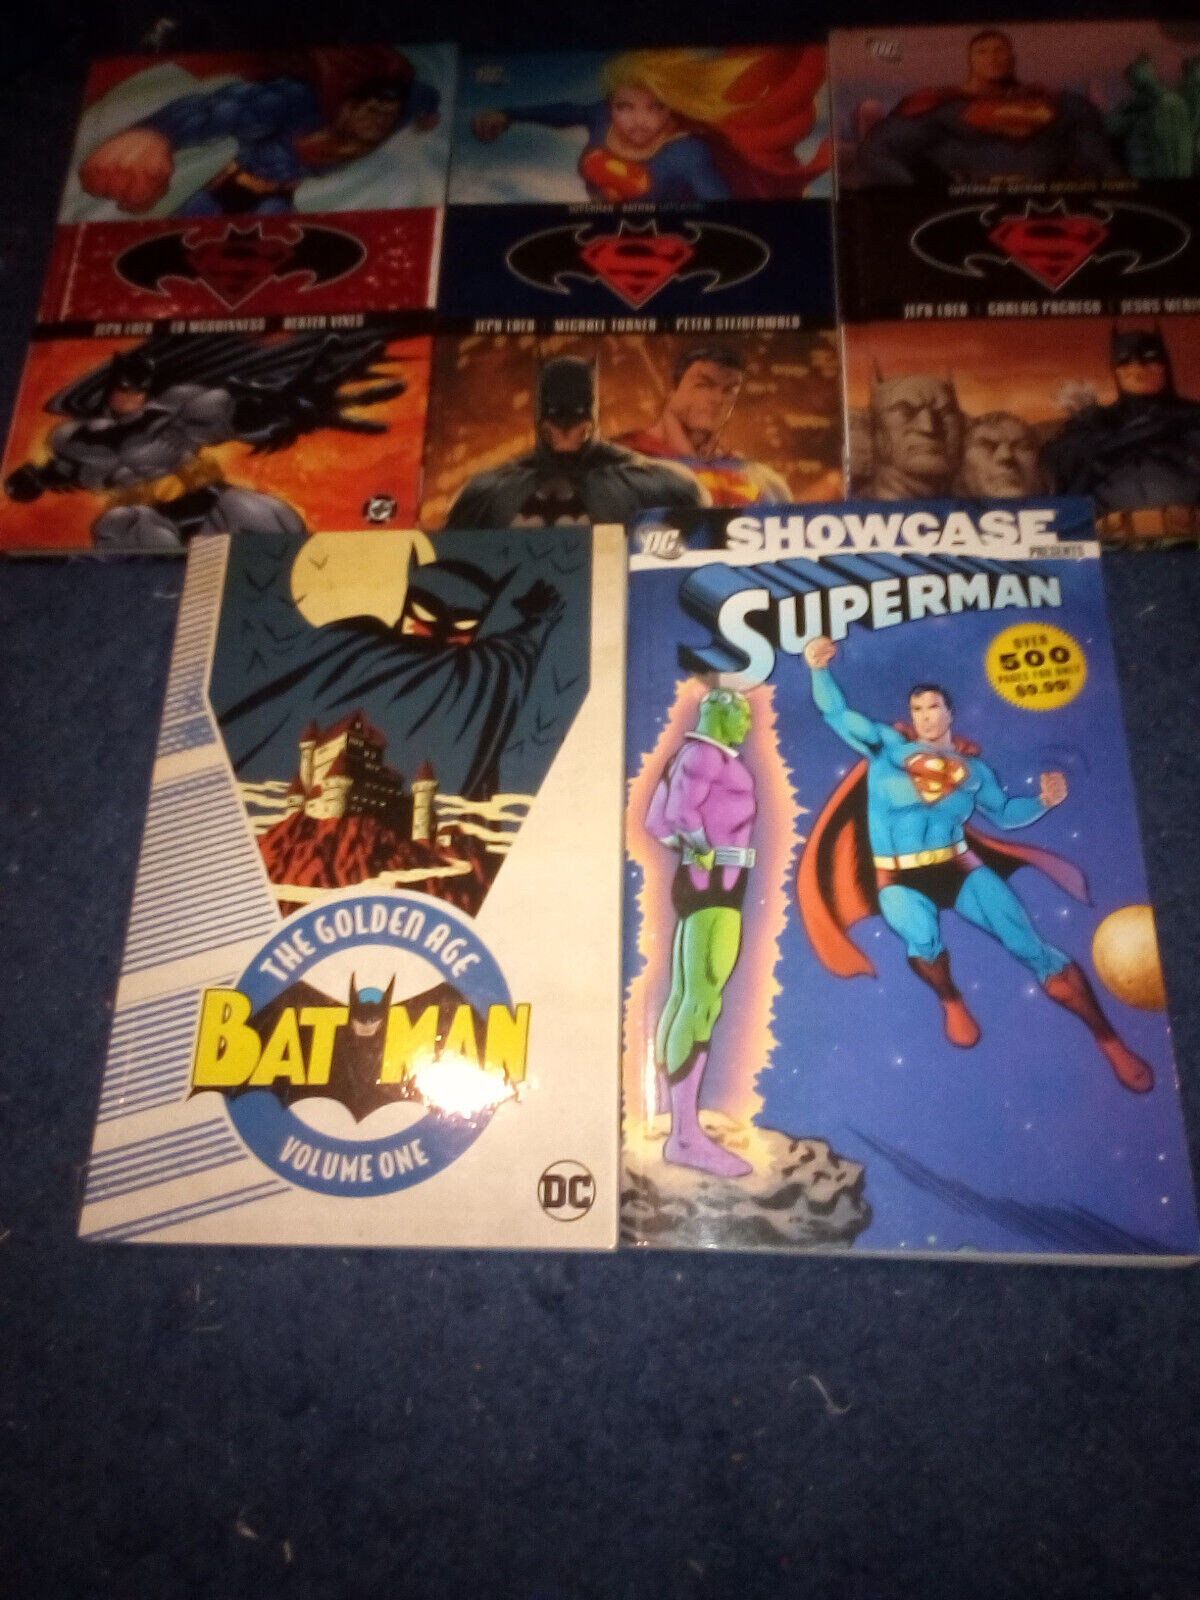 Superman/Batman vol.  1-3, Superman Showcase vol. 1, and Batman: The Golden Age.